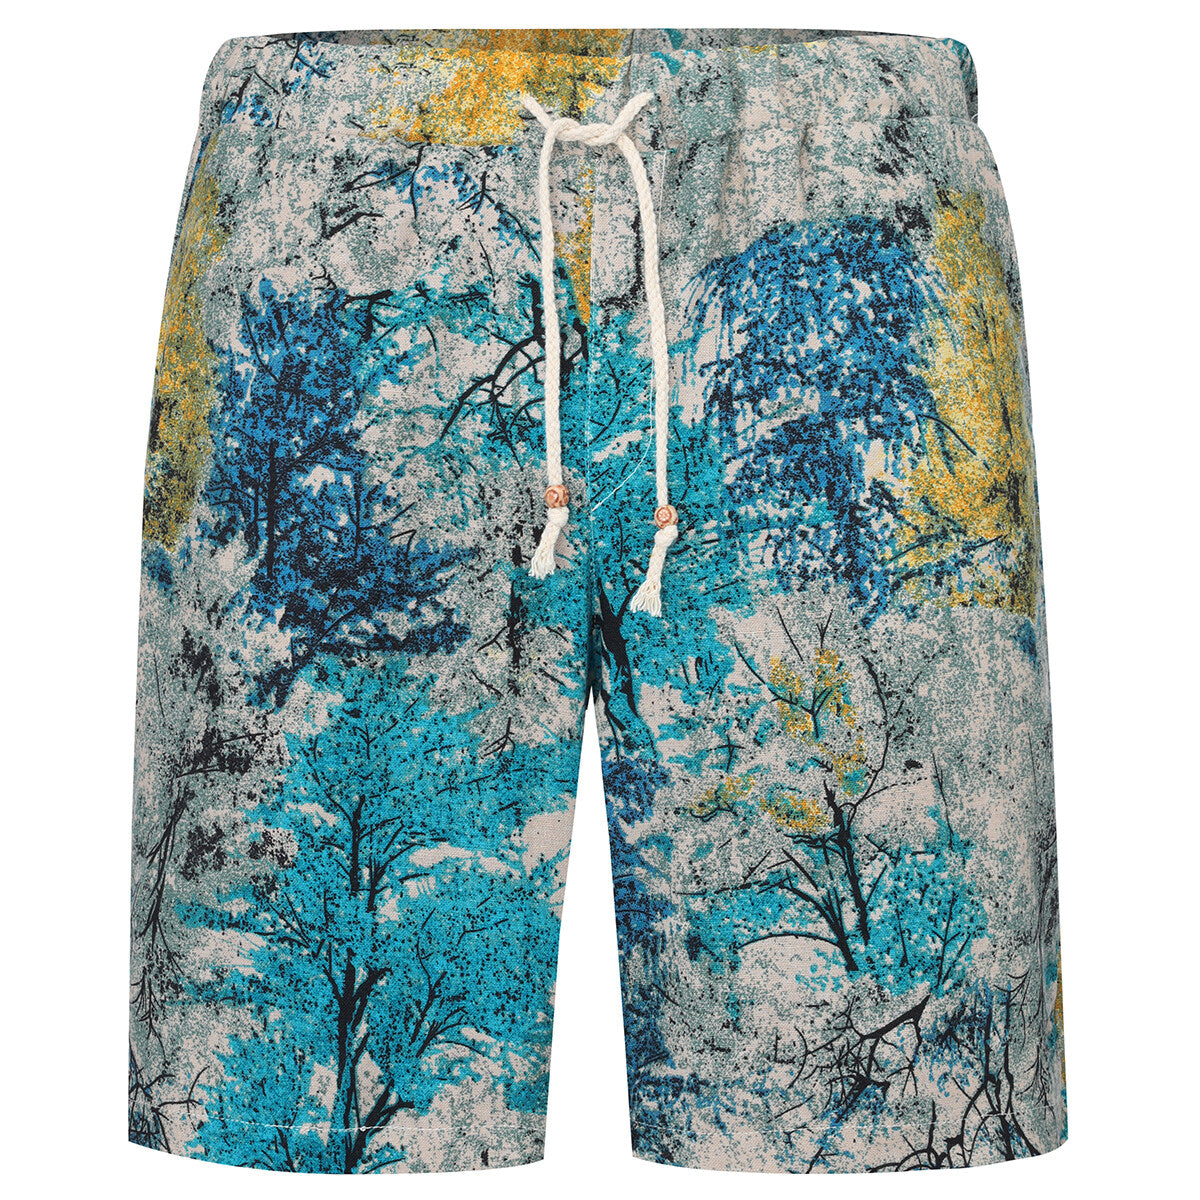 2-Piece Blue Woods Print Style Summer Suit